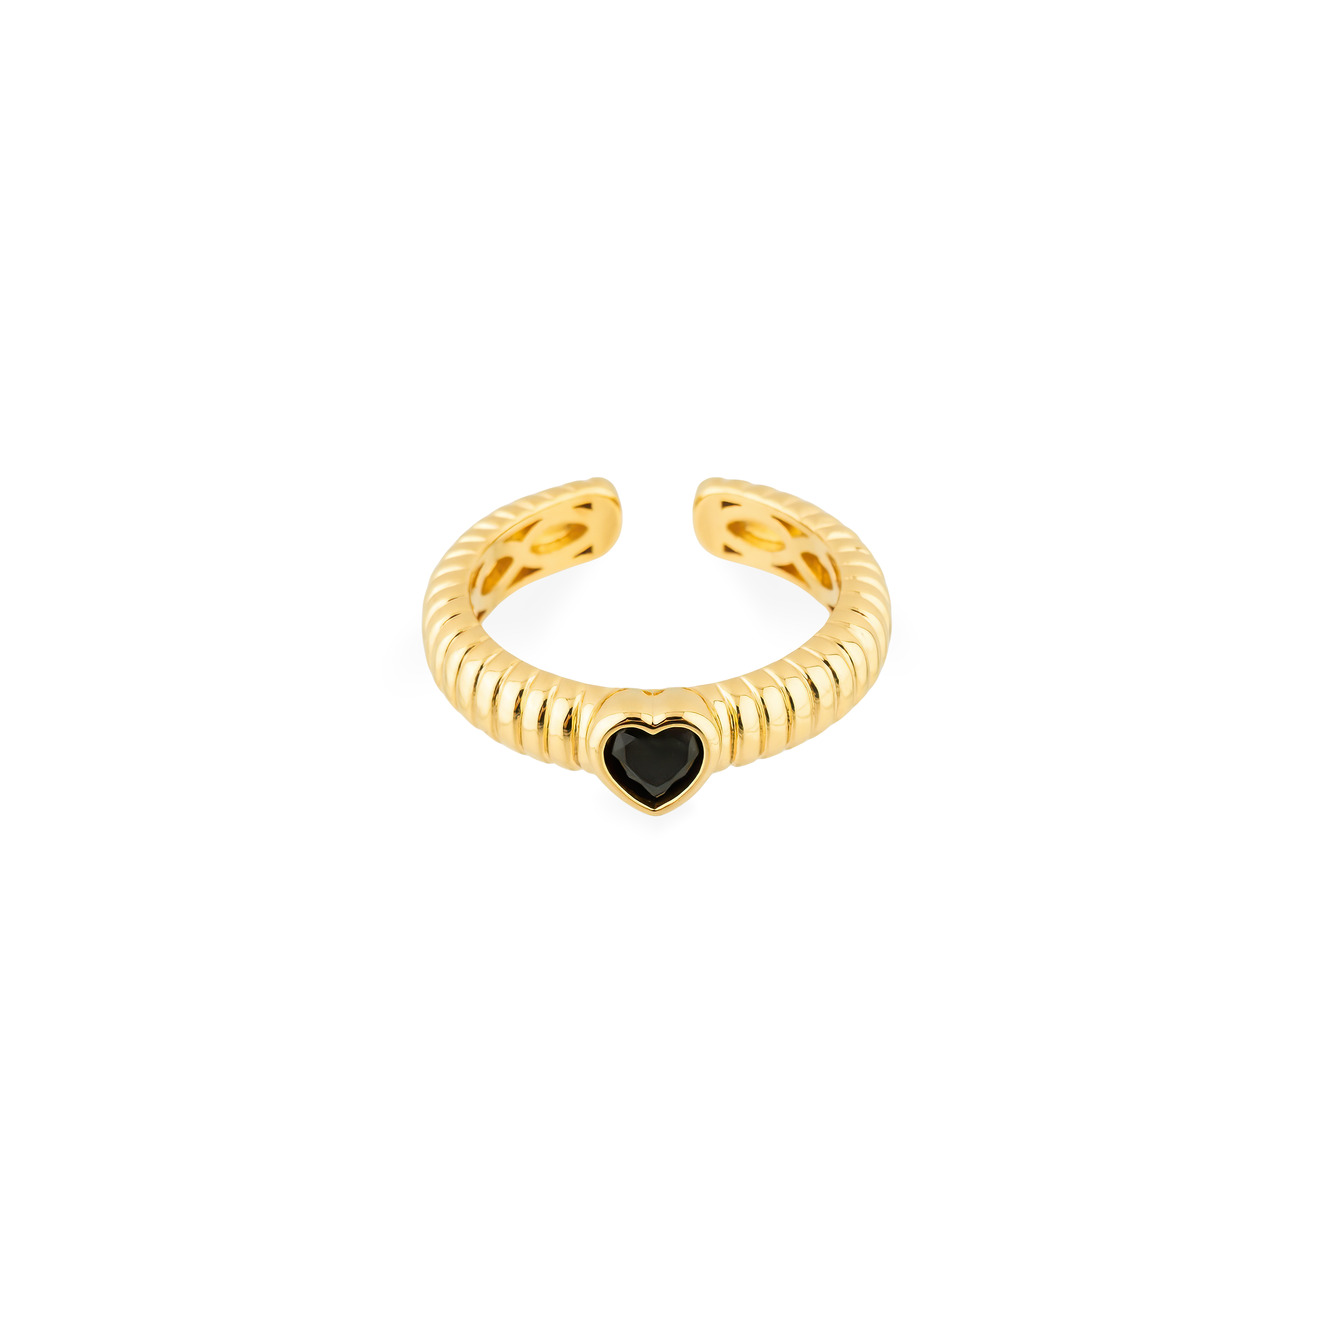 Herald Percy Золотистое фигурное кольцо с черным сердцем aqua золотистое незамкнутое кольцо с сердцем